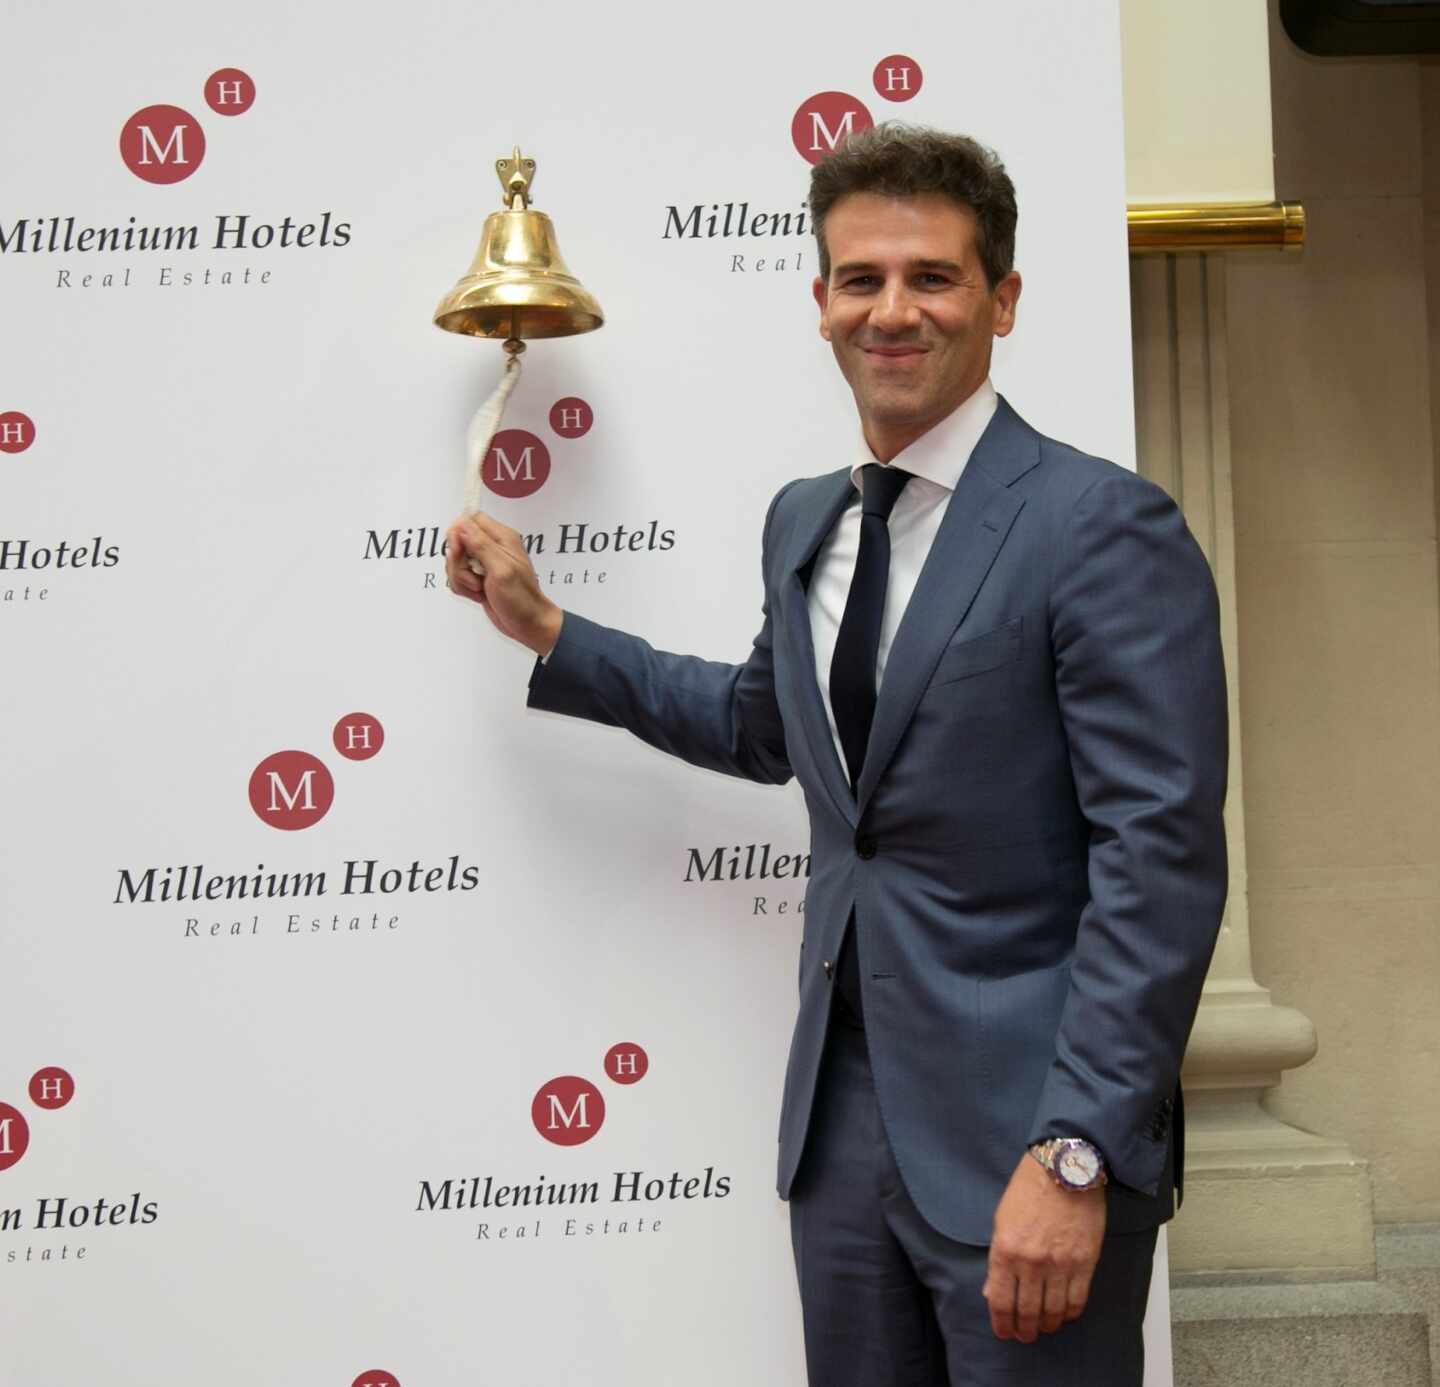 La ampliación de Millenium confirma el interés inversor por el sector hotelero español